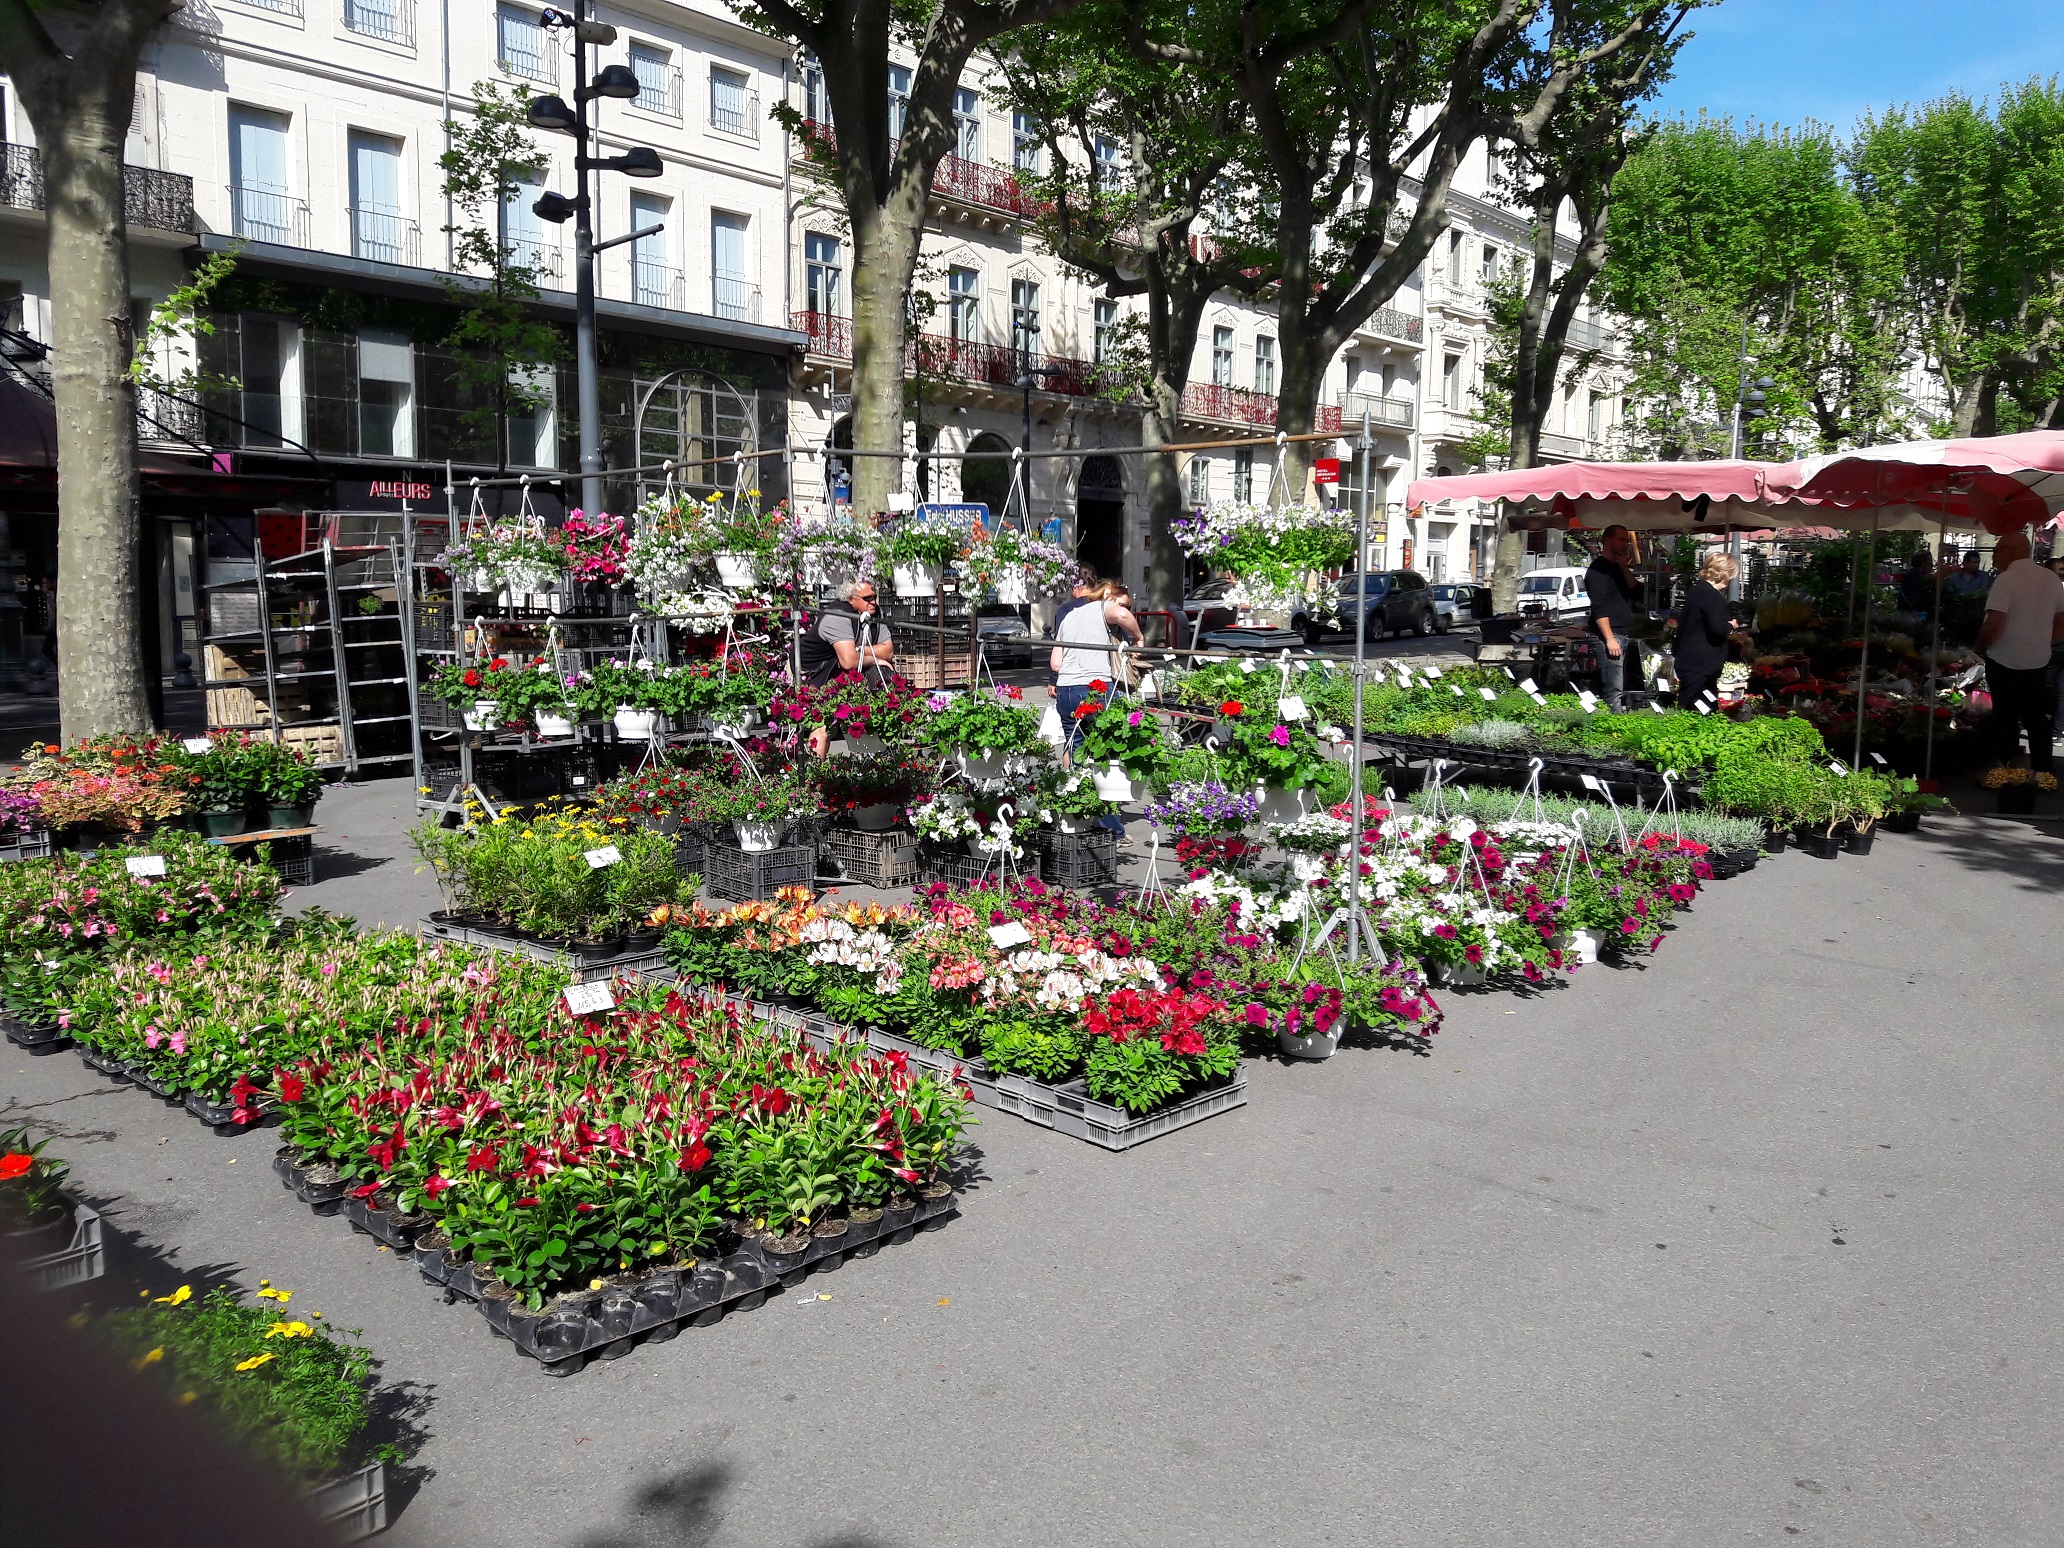 Beziers Flower Market